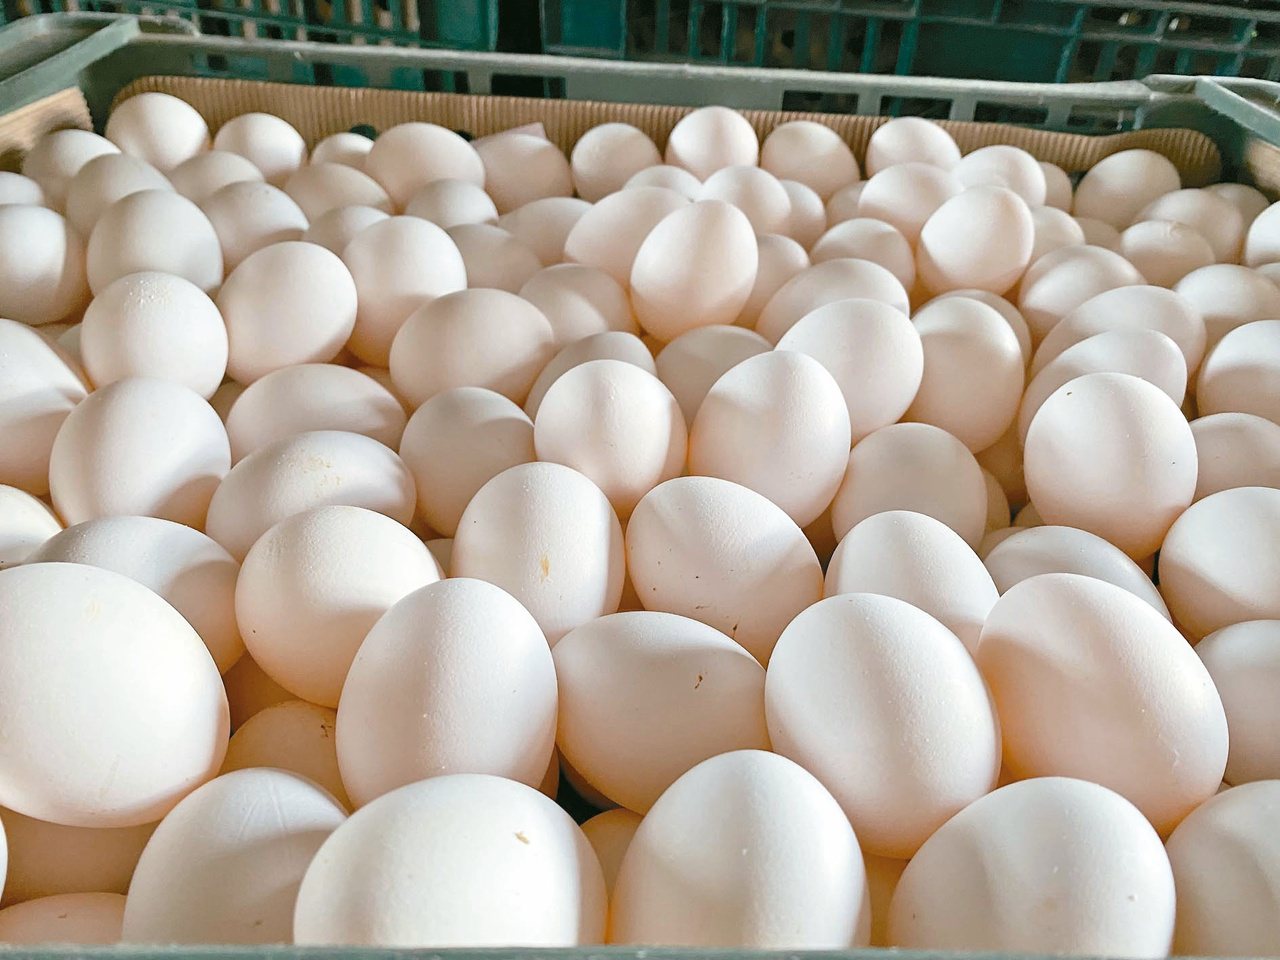 雞蛋應煮熟再食用。本報資料照片